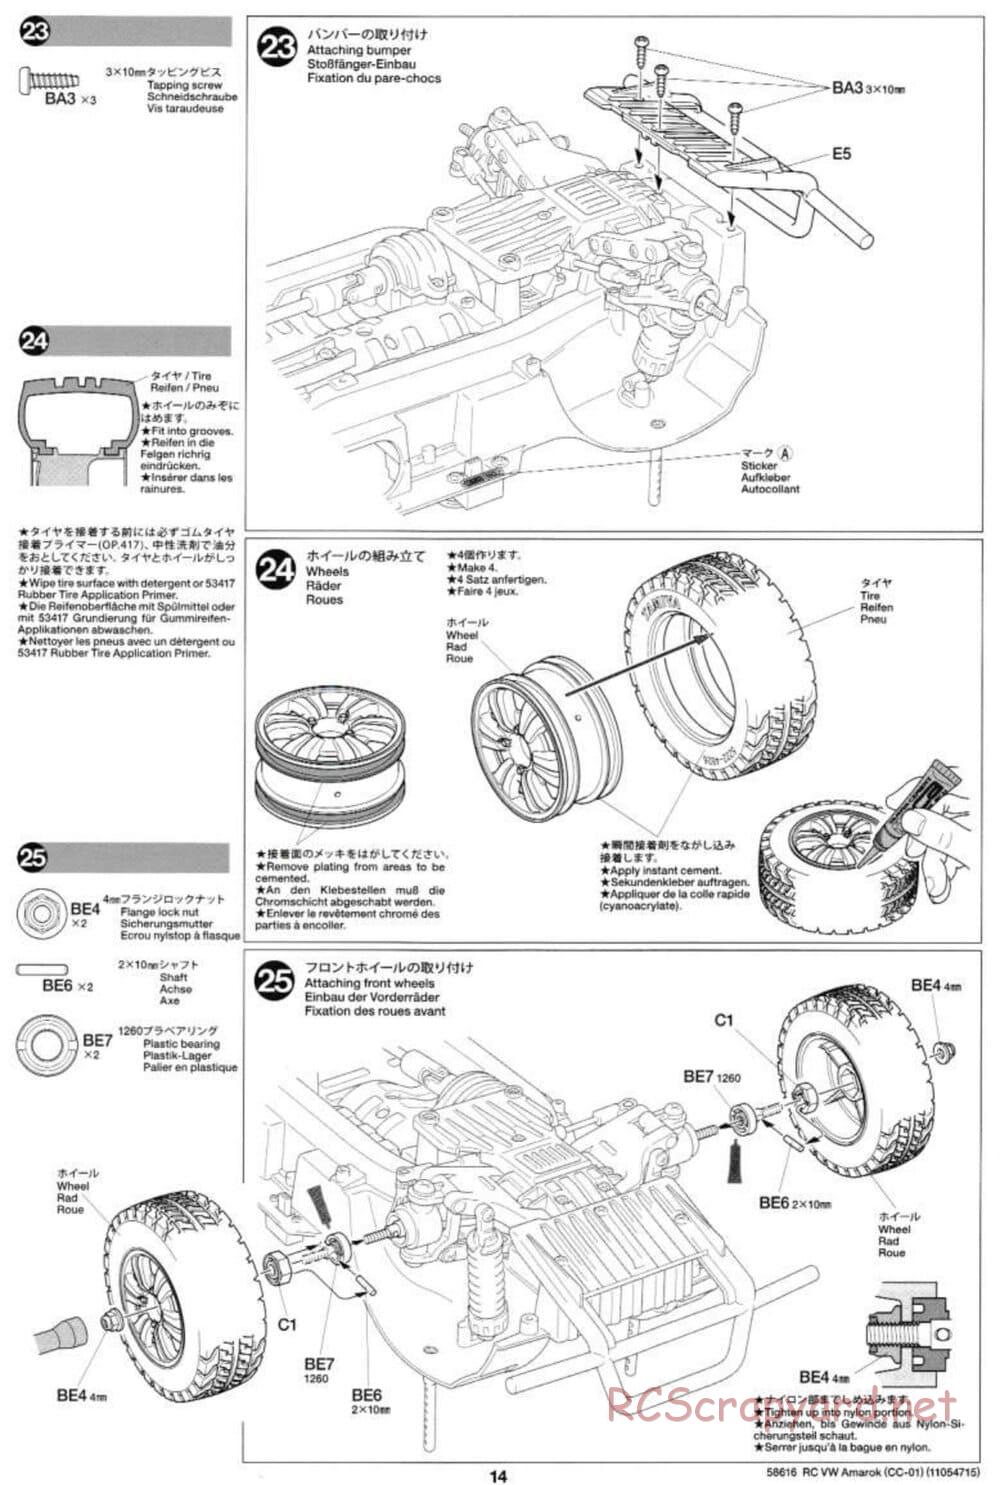 Tamiya - Volkswagen Amarok - CC-01 Chassis - Manual - Page 14